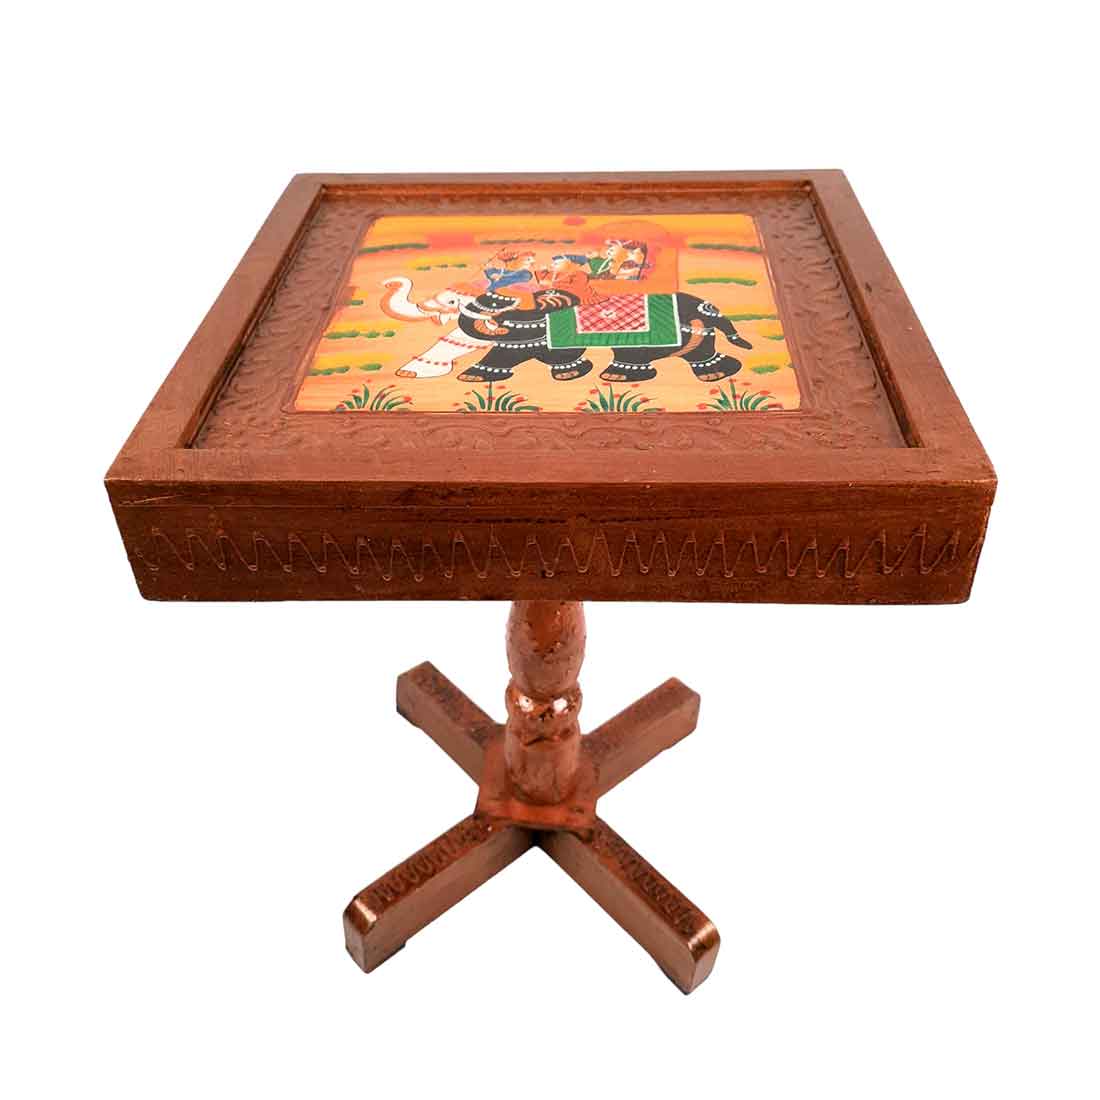 Wooden Side Table | End Table Set - for Living Room, Sofa Side, bedside, Home Decor & Gifts - 15 Inch (Set of 2) - apkamart